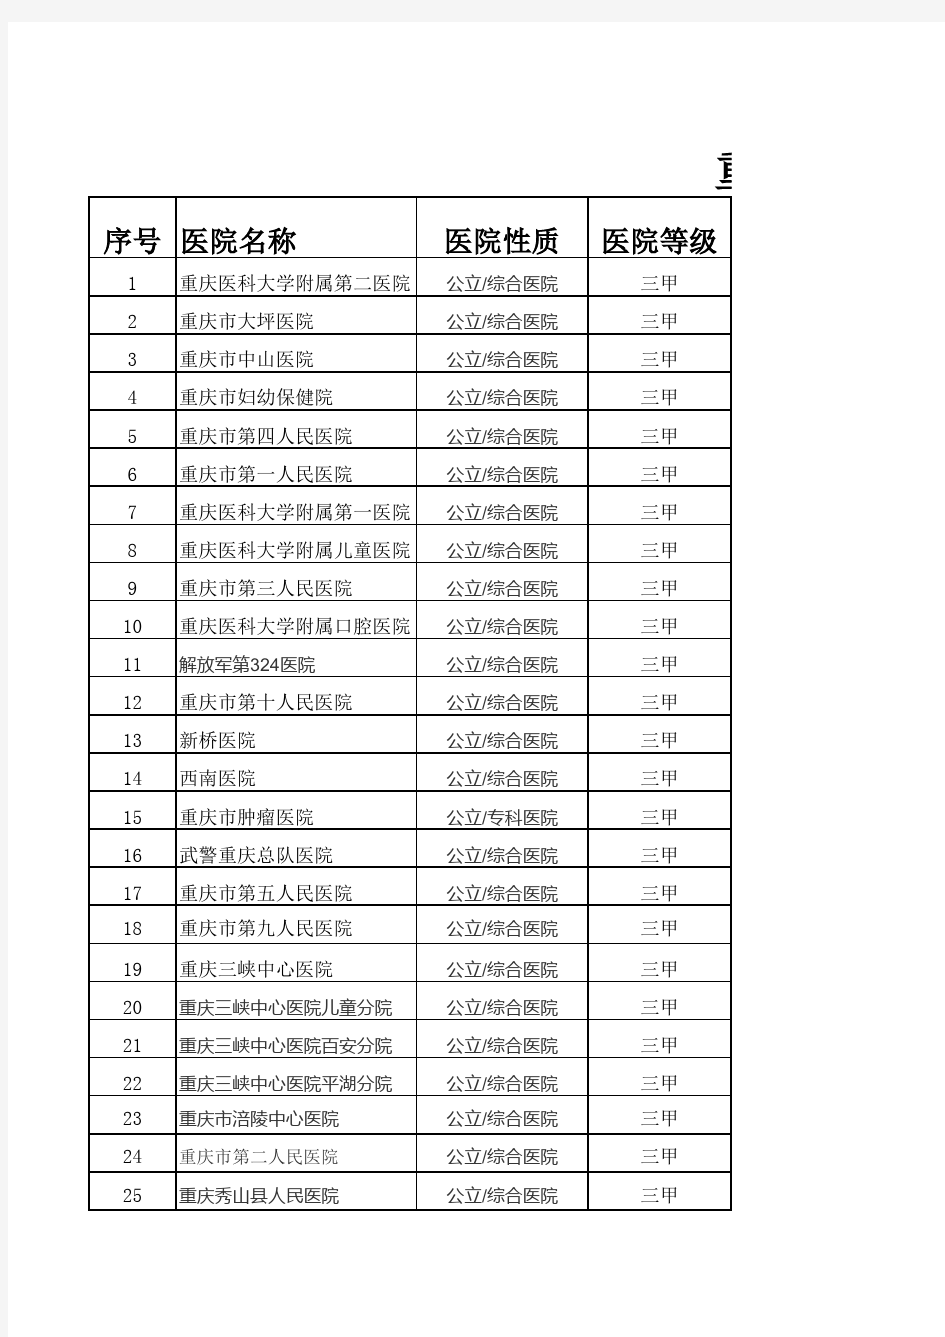 重庆市二级以上医院名单(自己整理)